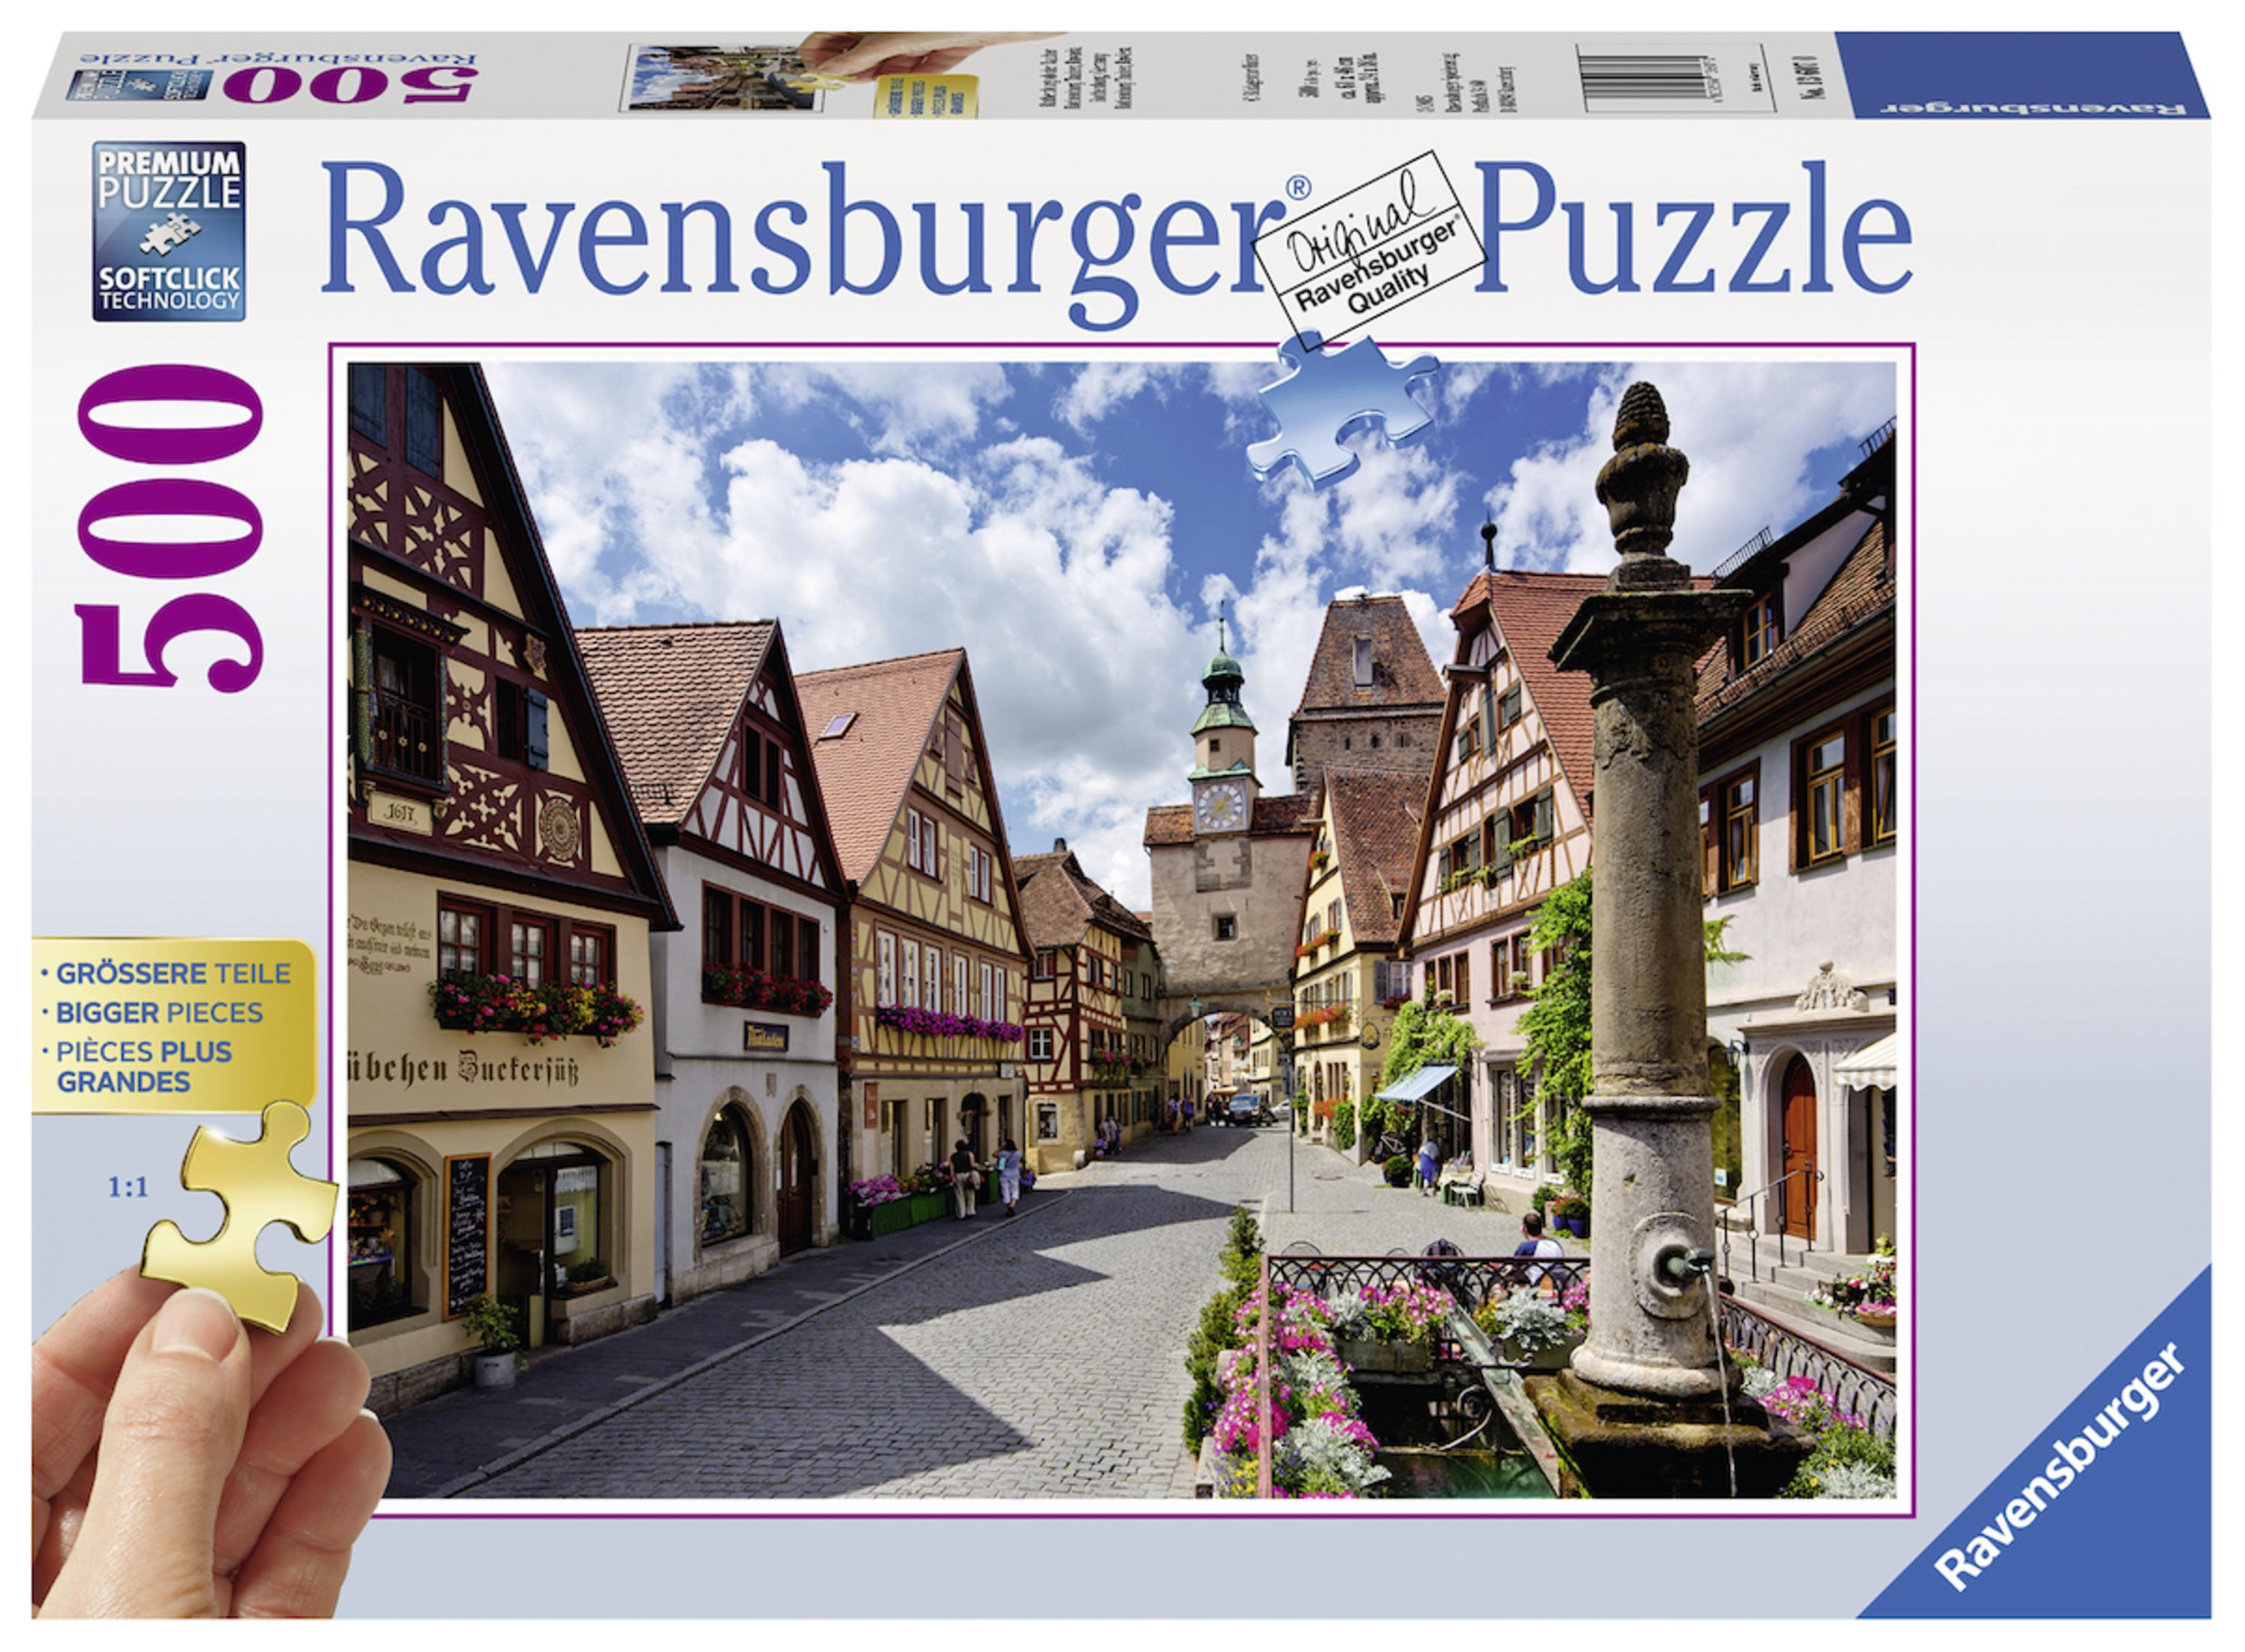 DER RAVENSBURGER OB ROTHENBURG Puzzle 13607 TAUBER